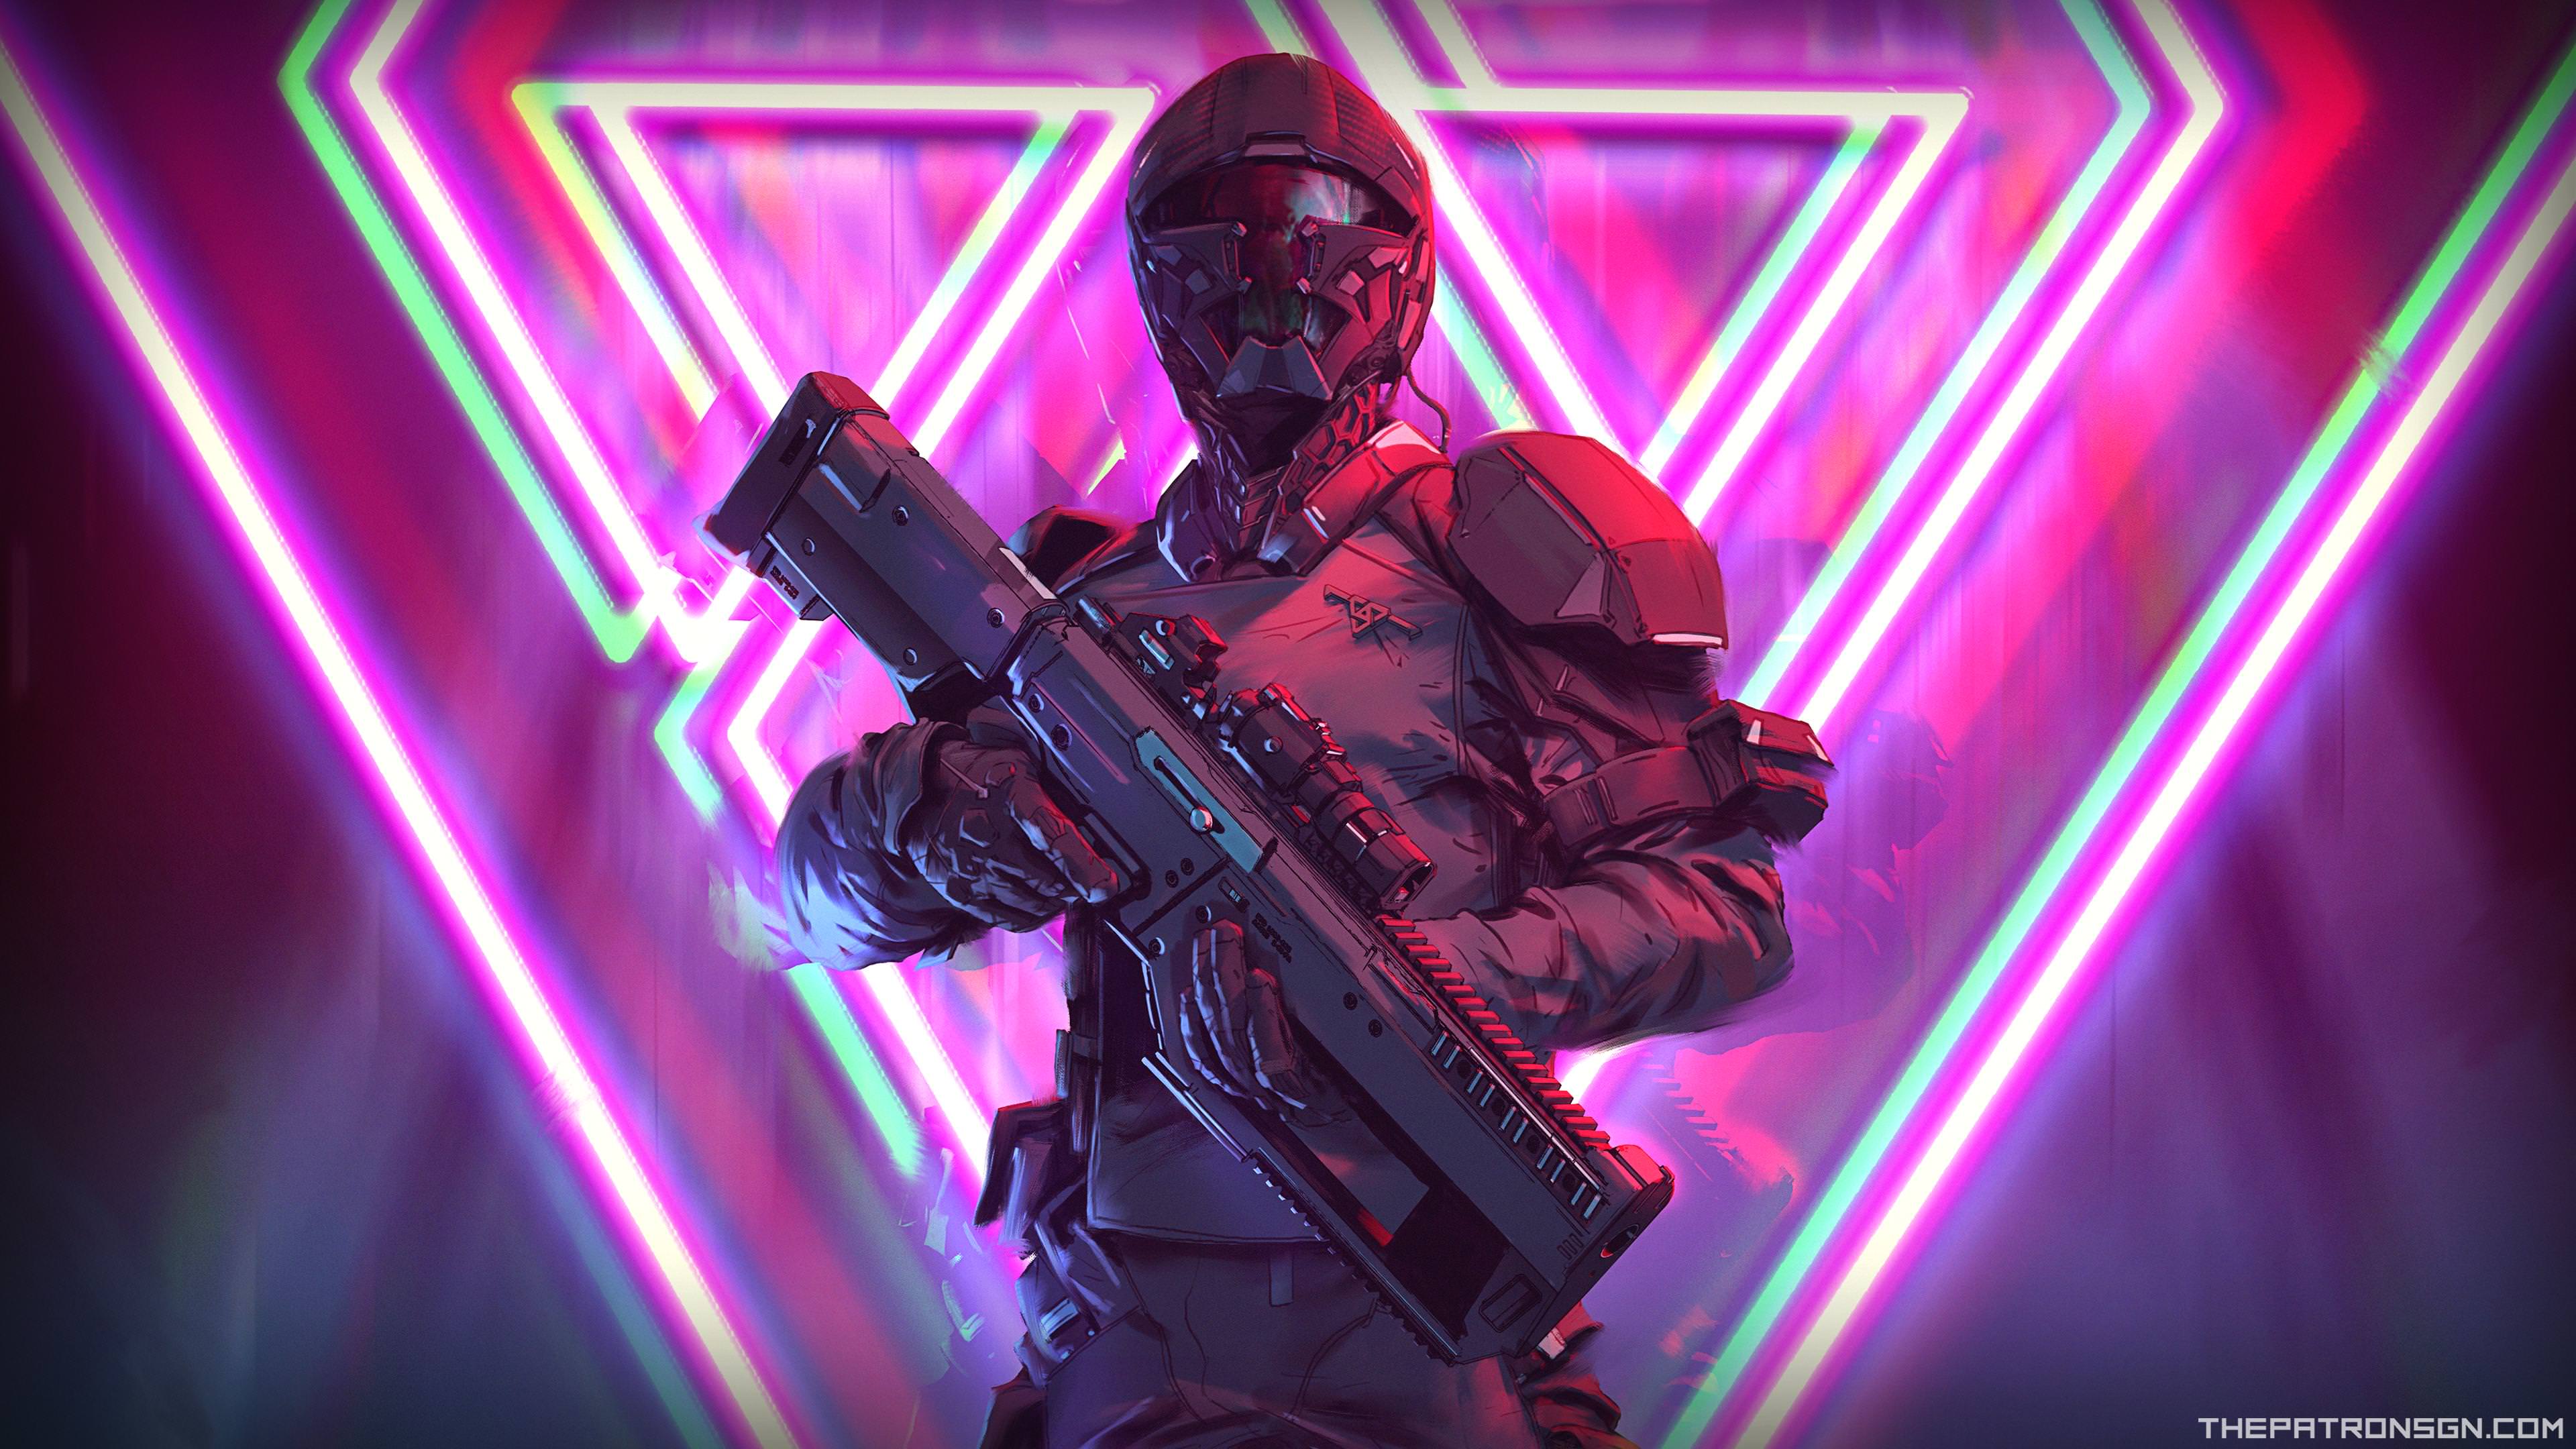 Assault Rifle Cyberpunk Futuristic Neon Soldier Warrior Weapon 3840x2160